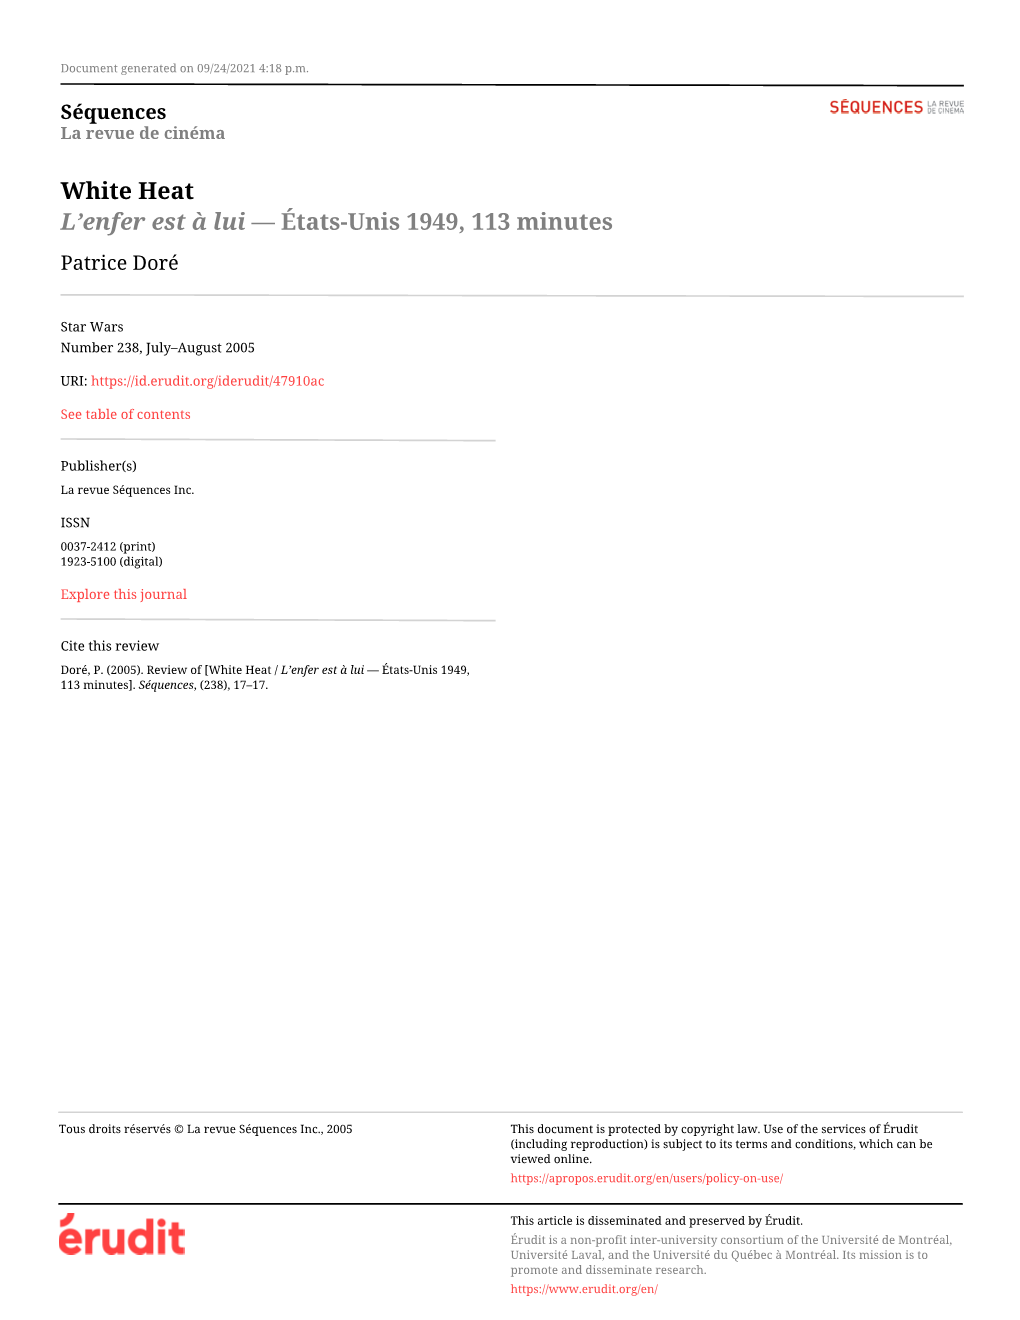 White Heat / L'enfer Est À Lui — États-Unis 1949, 113 Minutes